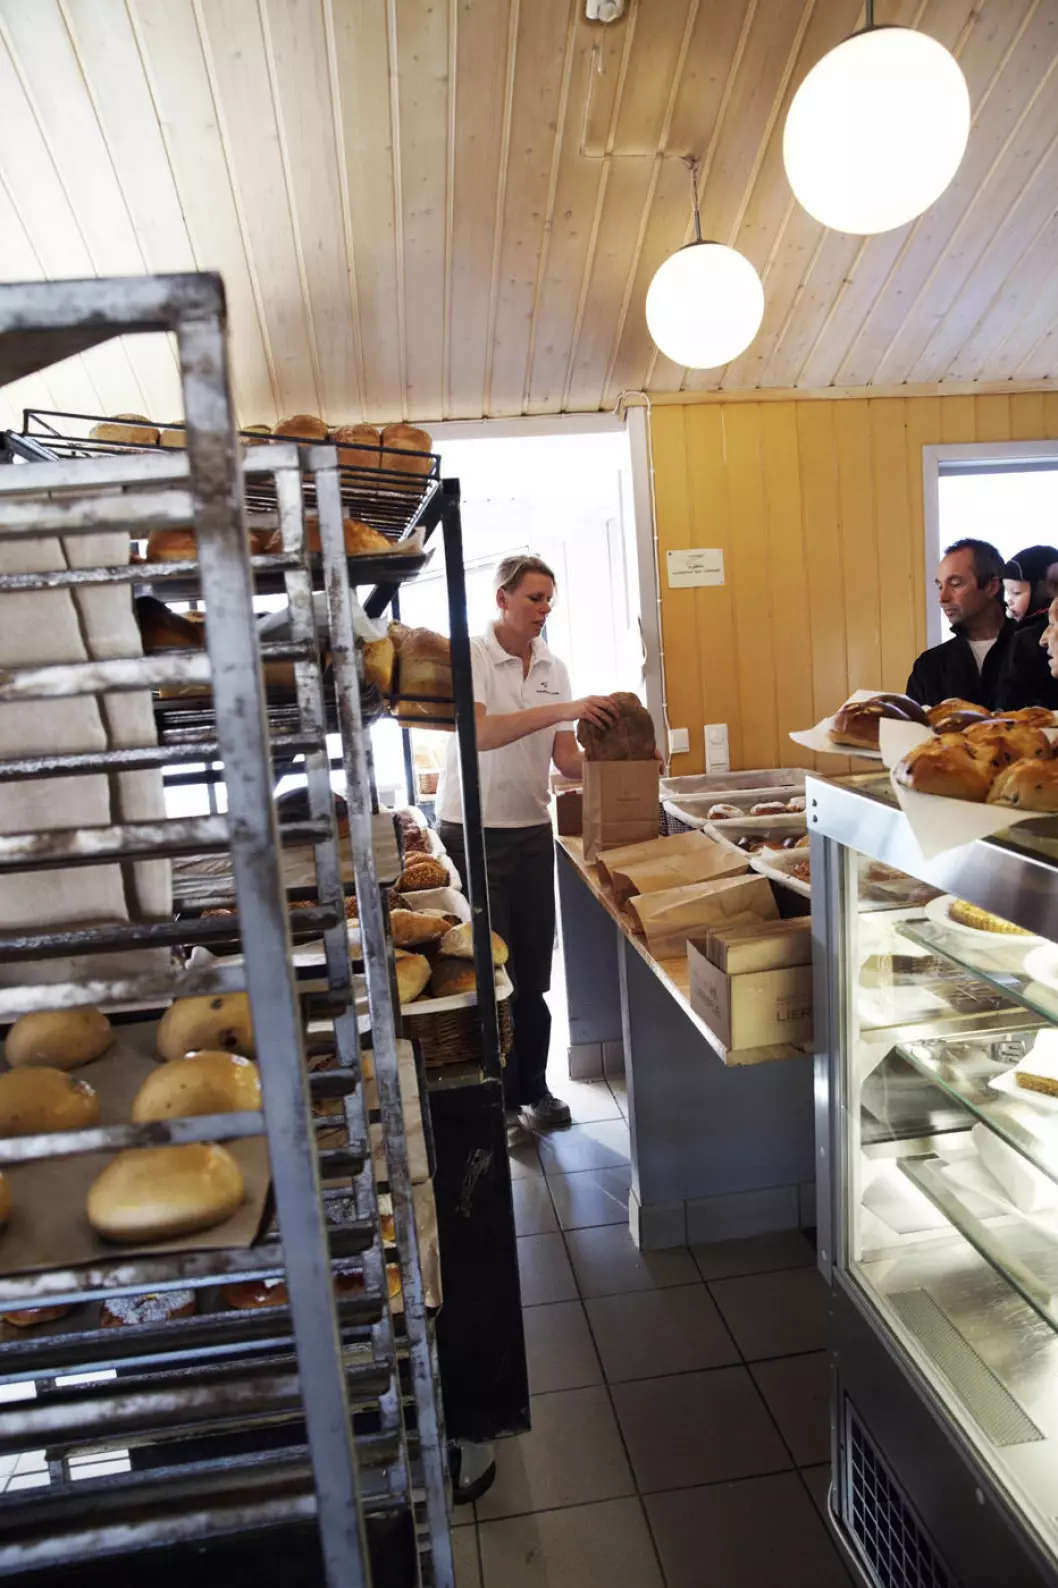 TRIVELIG: Bakeriet i Lom har lyse og trivelige lokaler, med selve bakeriet midt i herligheten. Foto: Pål Rødal